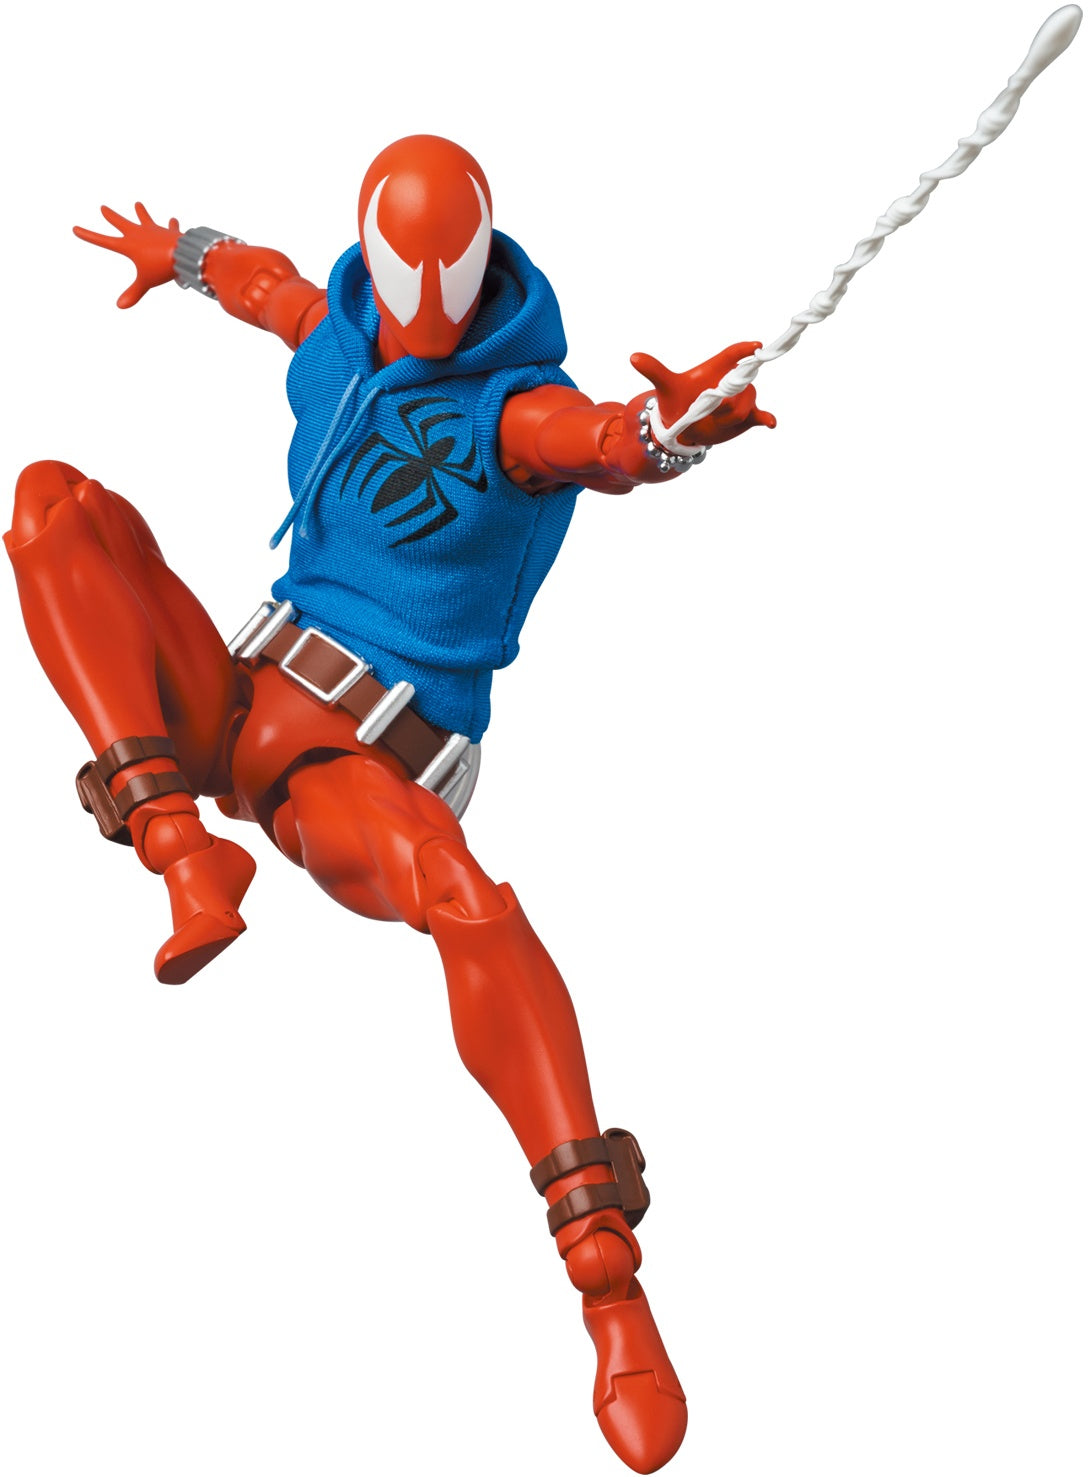 Scarlet Spider - Spider-man Mafex PREVENTA